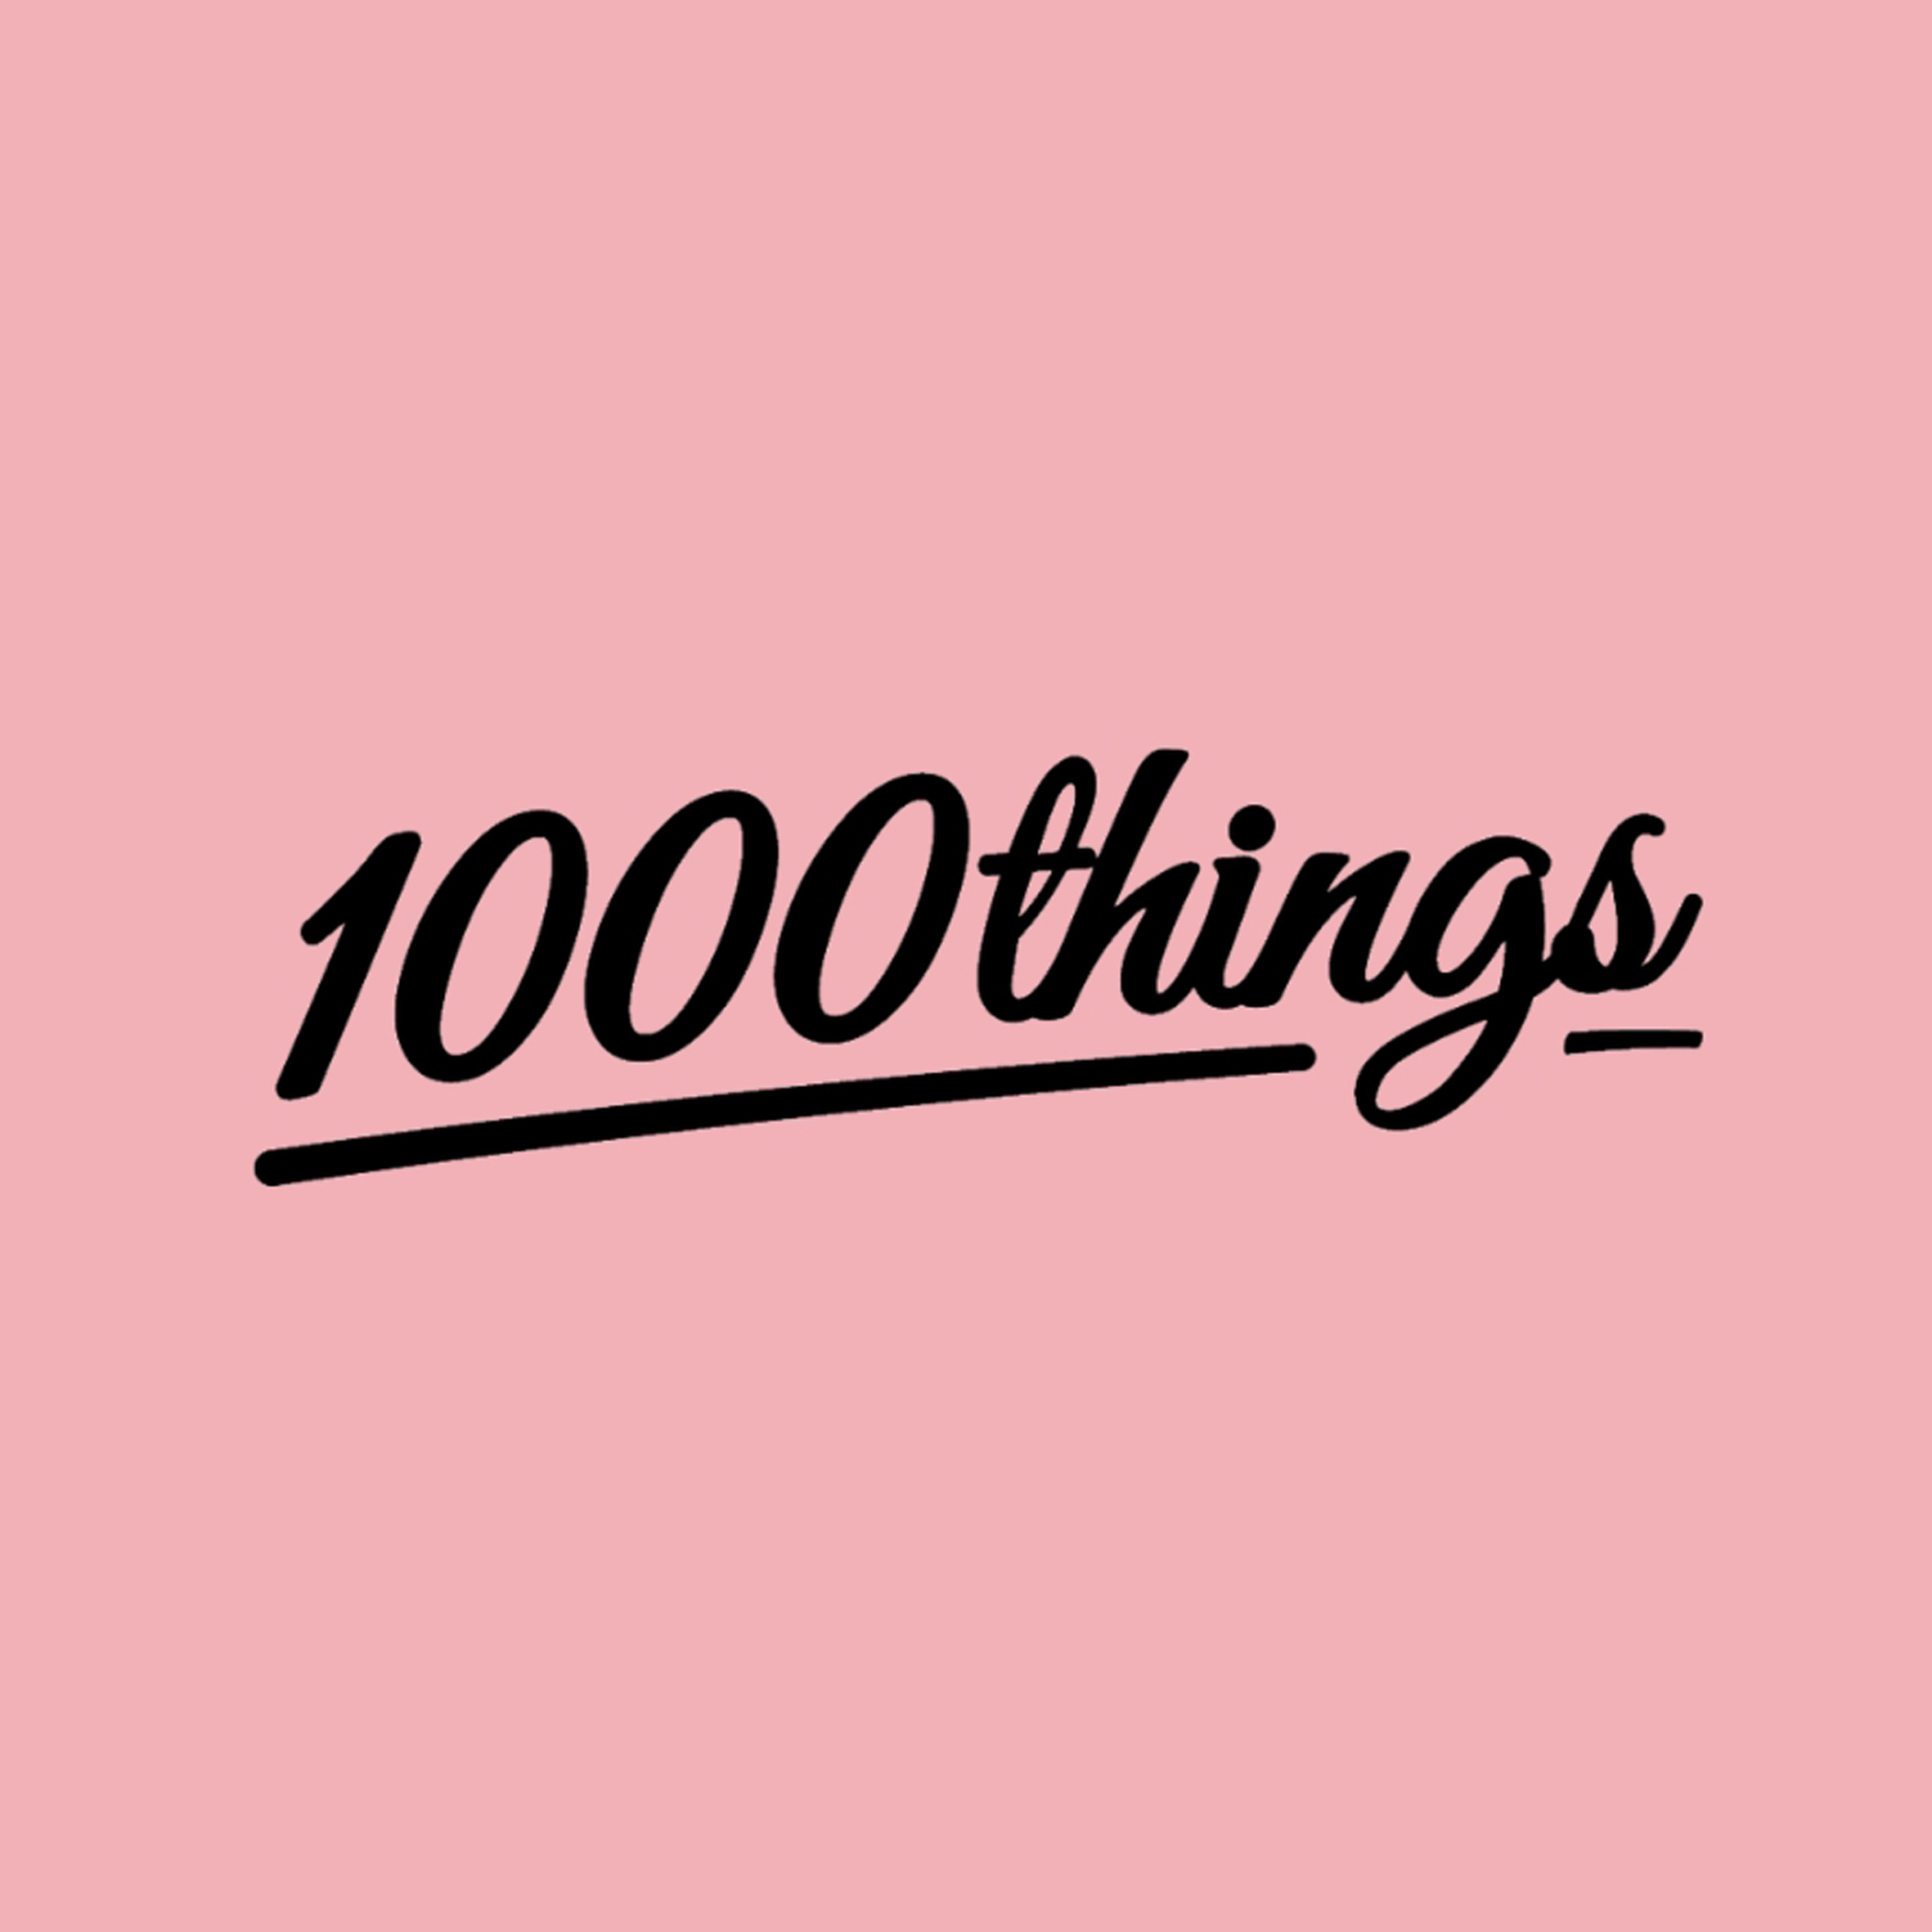 1000things.at